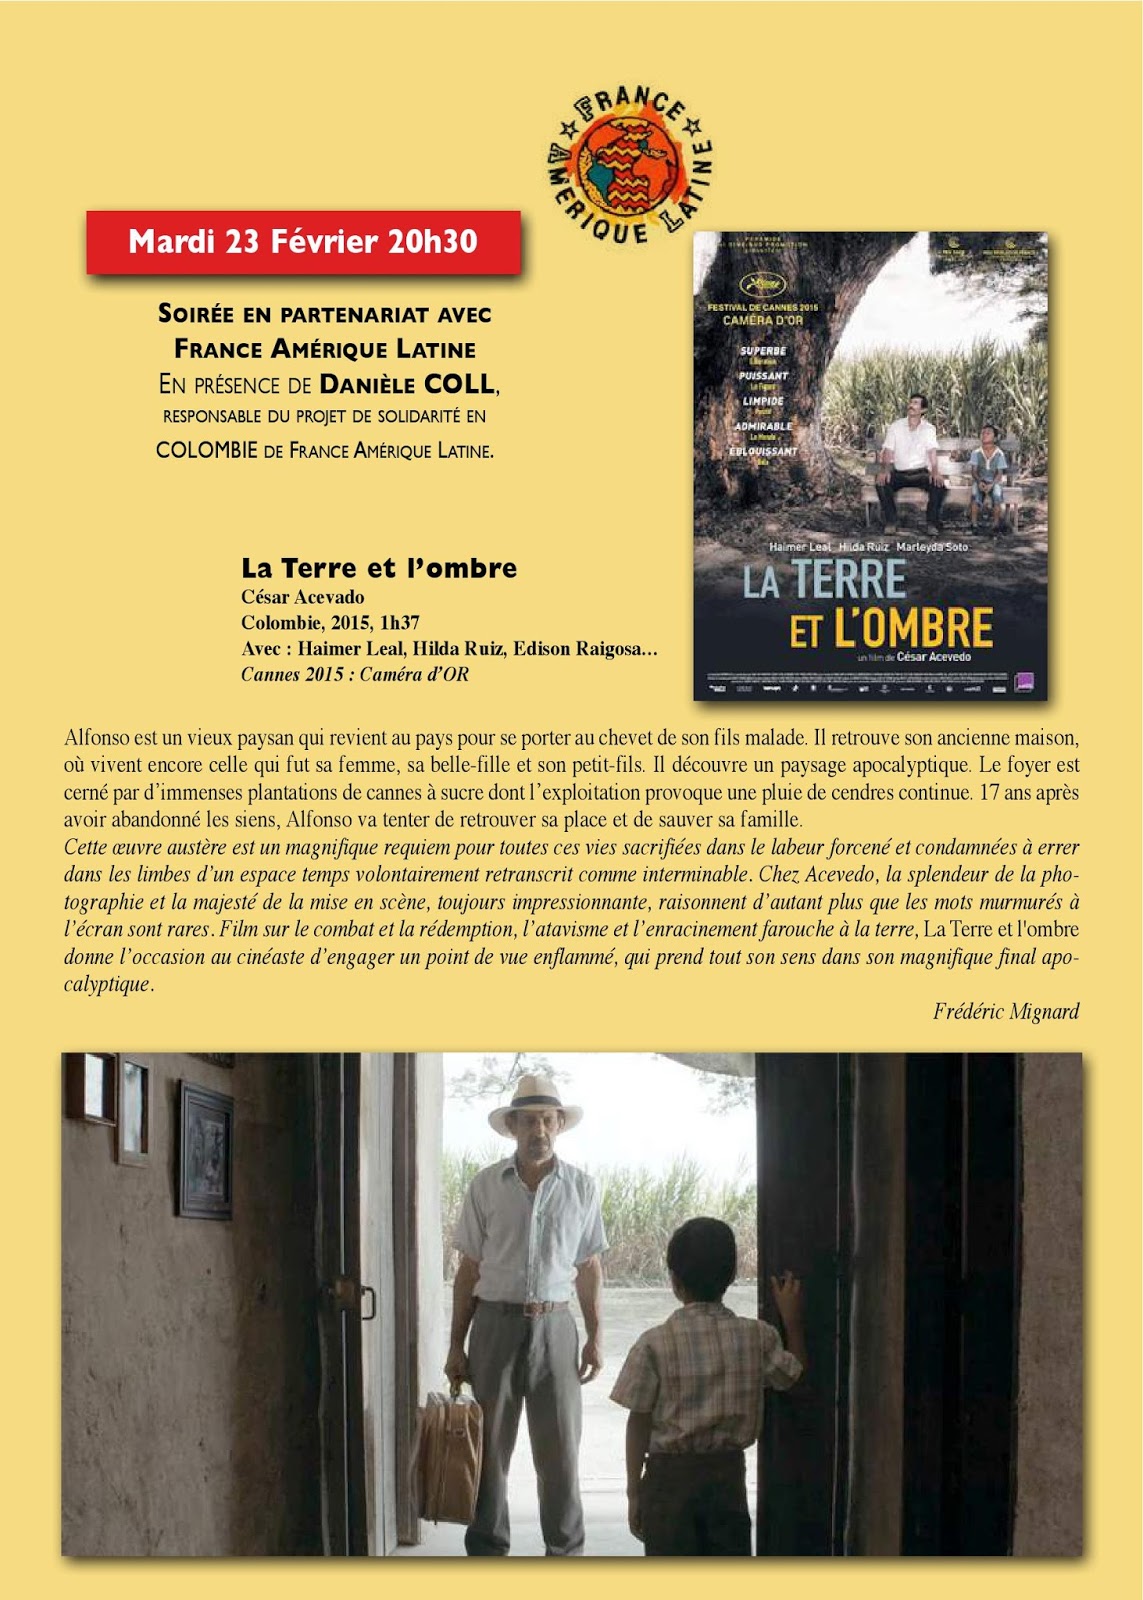 « La terre et l’ombre », film colombien: projection-débat à Martigues 13